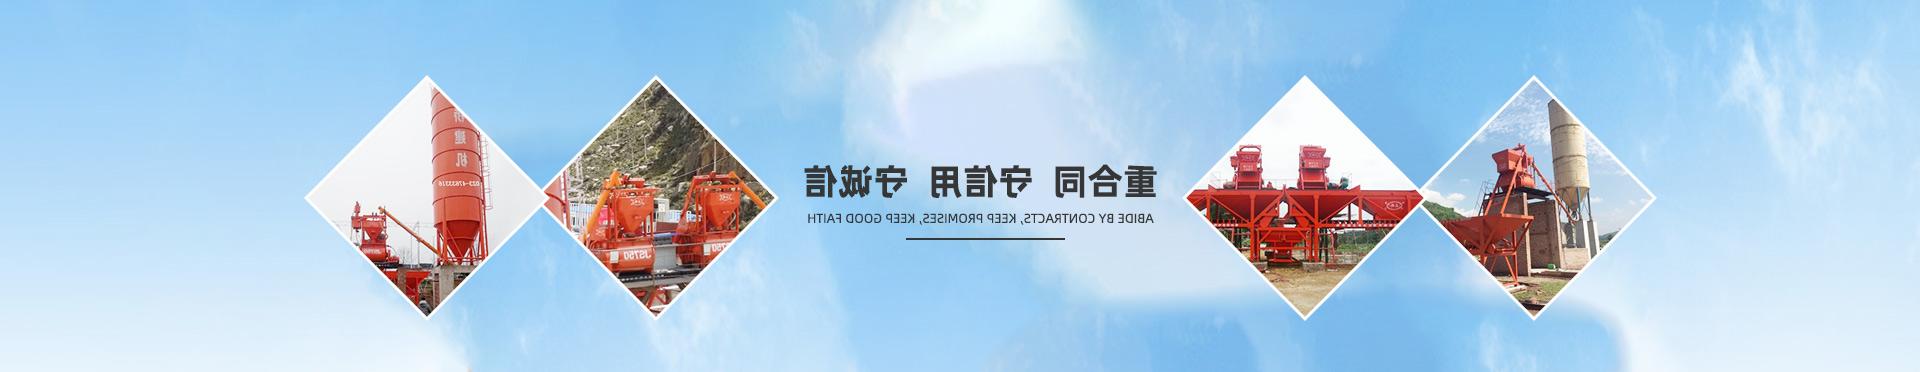 http://j8tv.minghuojie.com/data/upload/202004/20200429154839_570.jpg